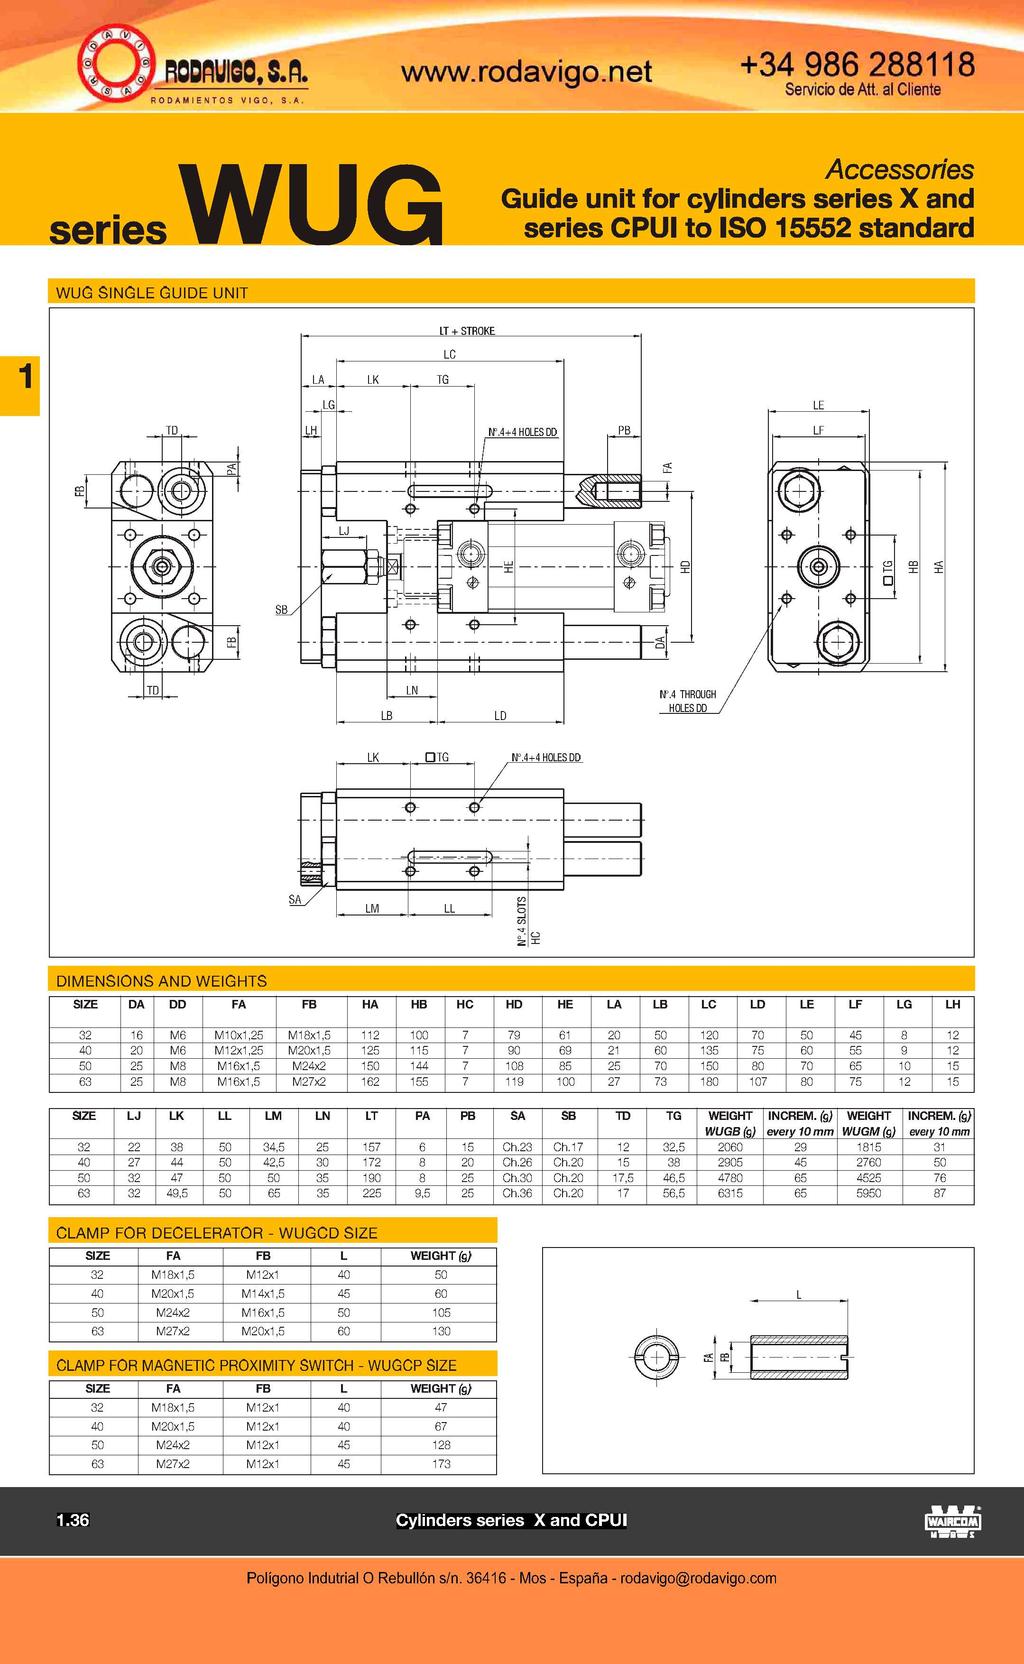 RODRIGO, SA ODAHIEMTOS VIGO. S.A. w\a/w.rodavigo.net +34 986 288118 series WUG Accessories Guide unit for cylinders series X and WUG SINGLE GUIDE UNIT LK TG LG I II HF.